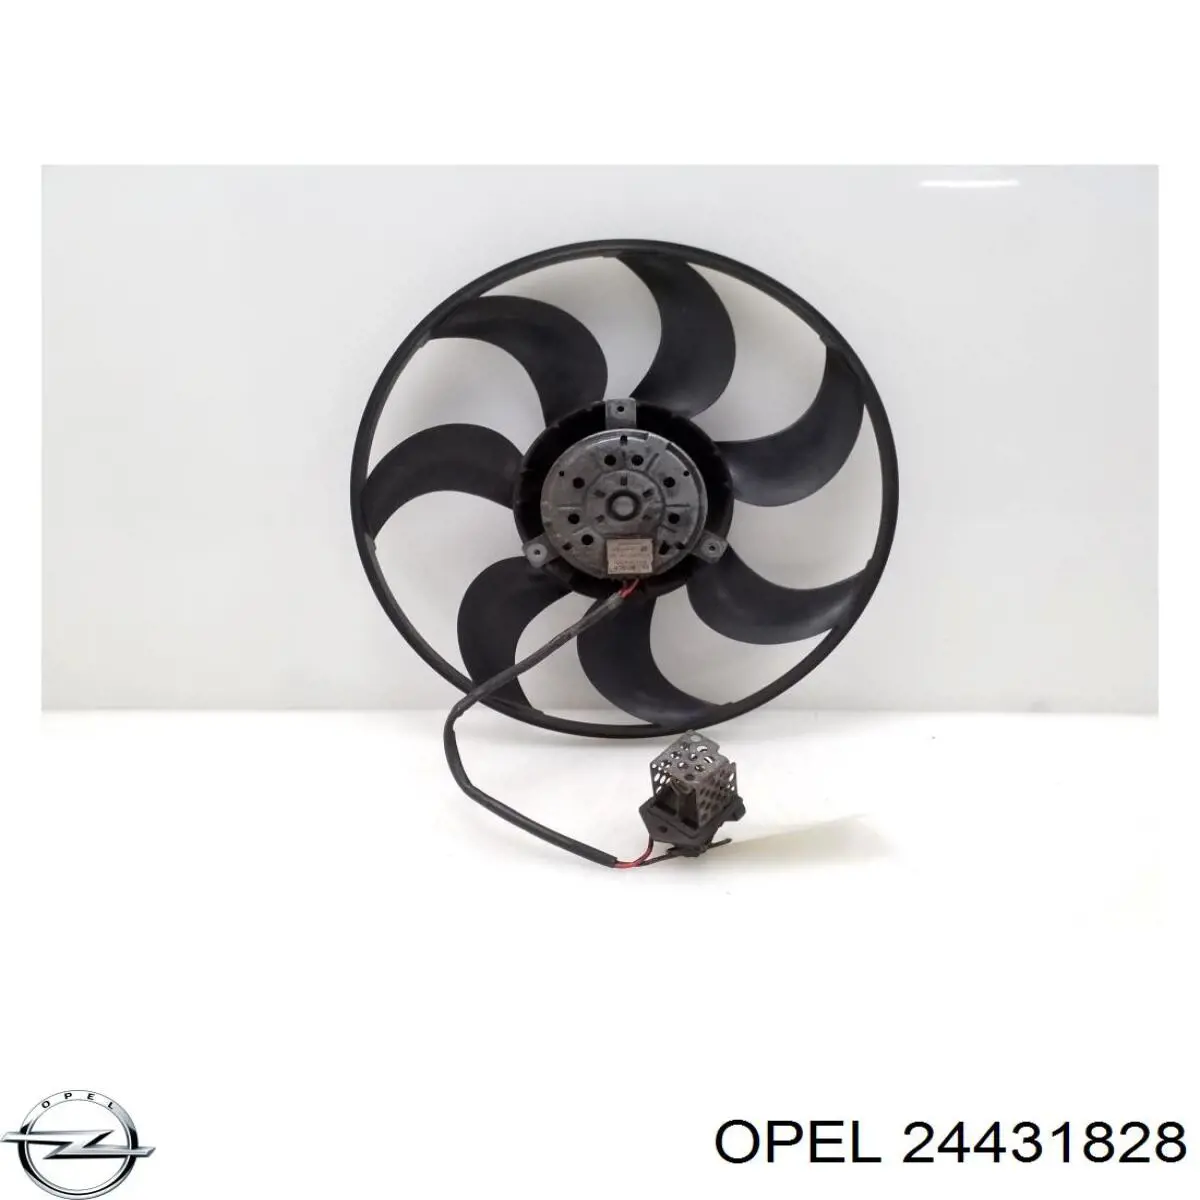 24431828 Opel difusor do radiador de esfriamento, montado com motor e roda de aletas